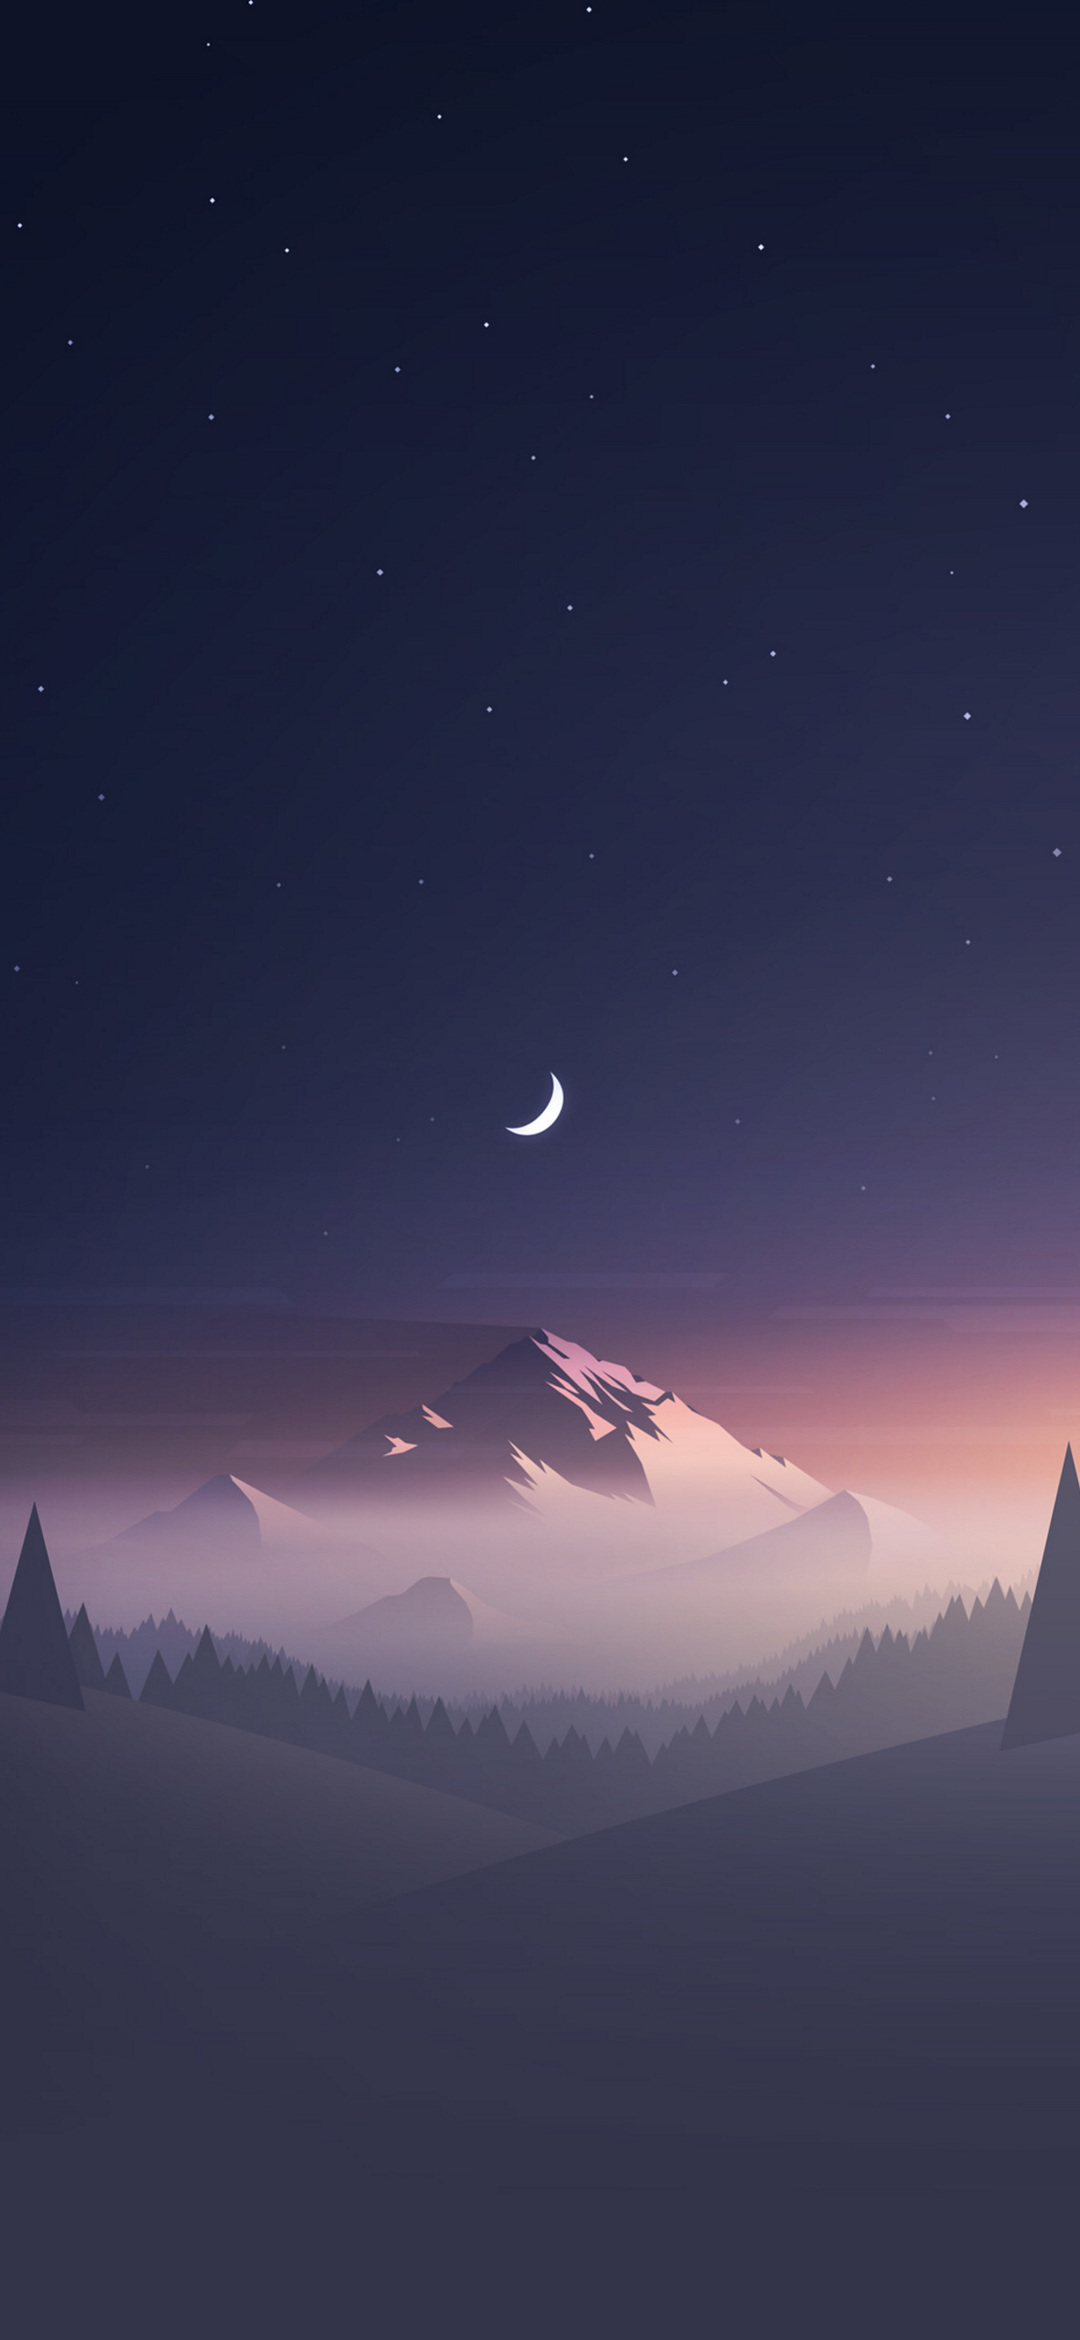 月と星空と雪山のイラスト Redmi Note 9t Androidスマホ壁紙 待ち受け スマラン